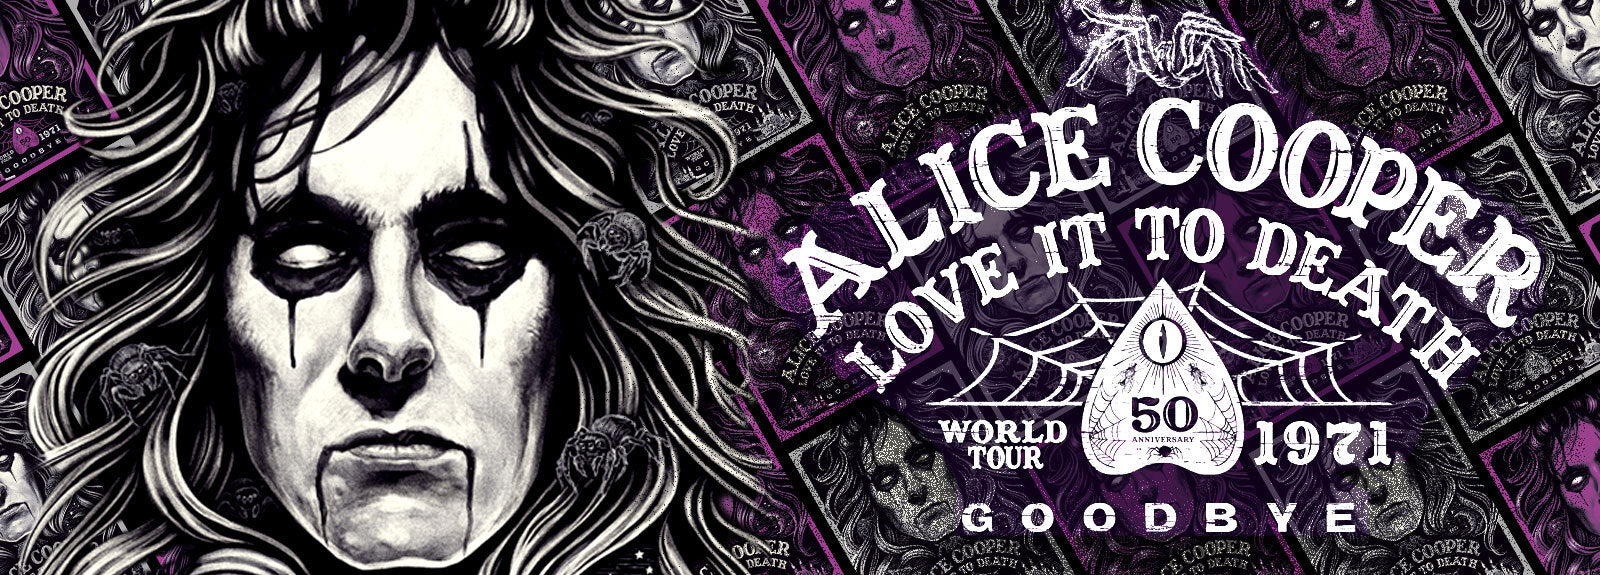 Alice Cooper Love It To Death 50th Anniversary